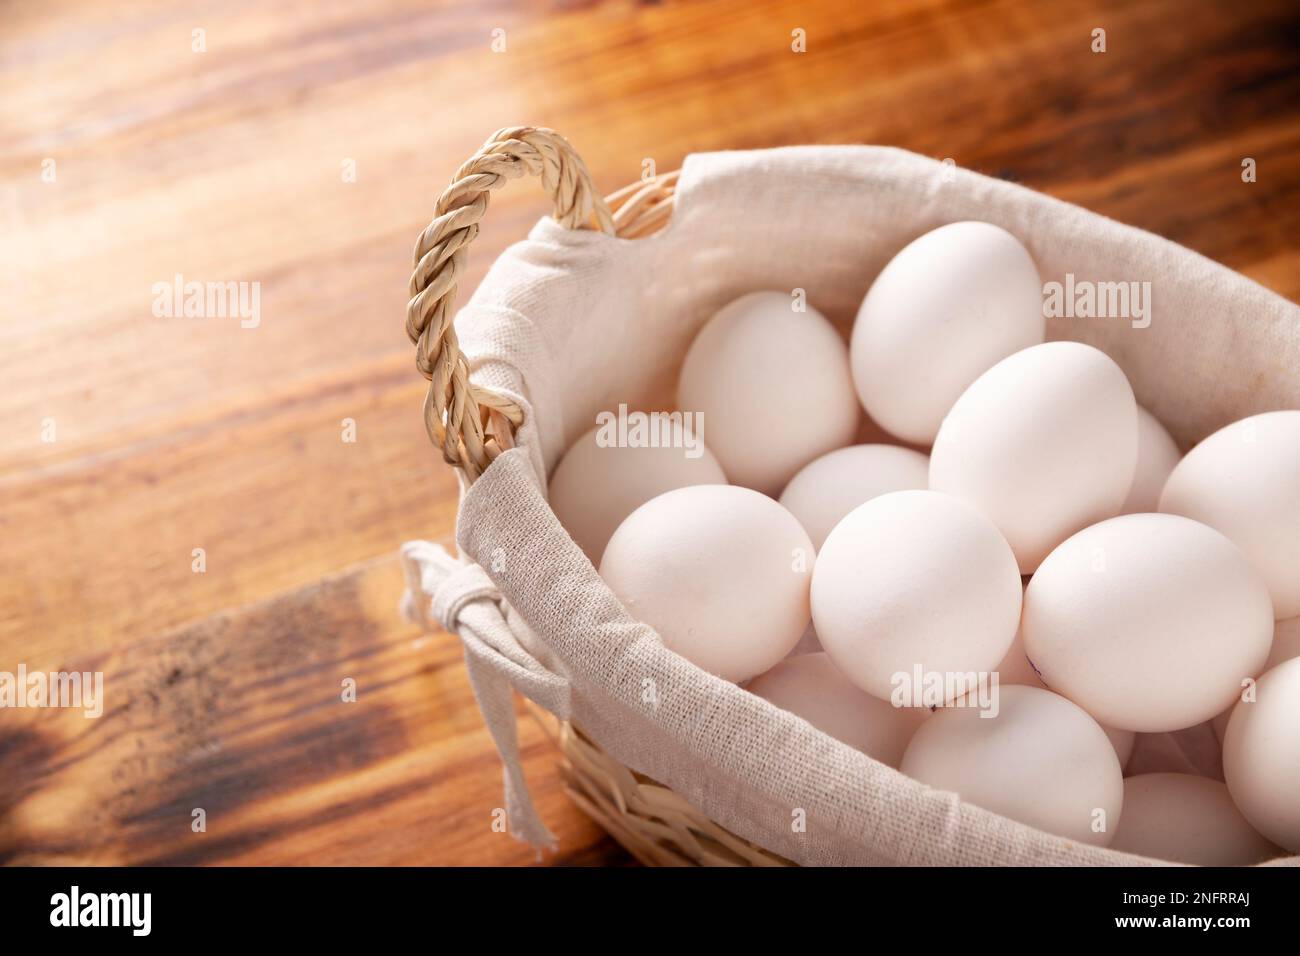 Muchos huevos de pollo blanco en la mesa de madera rústica. Producto alimenticio nutritivo y económico muy popular. Imagen de cierre con espacio de copia. Foto de stock